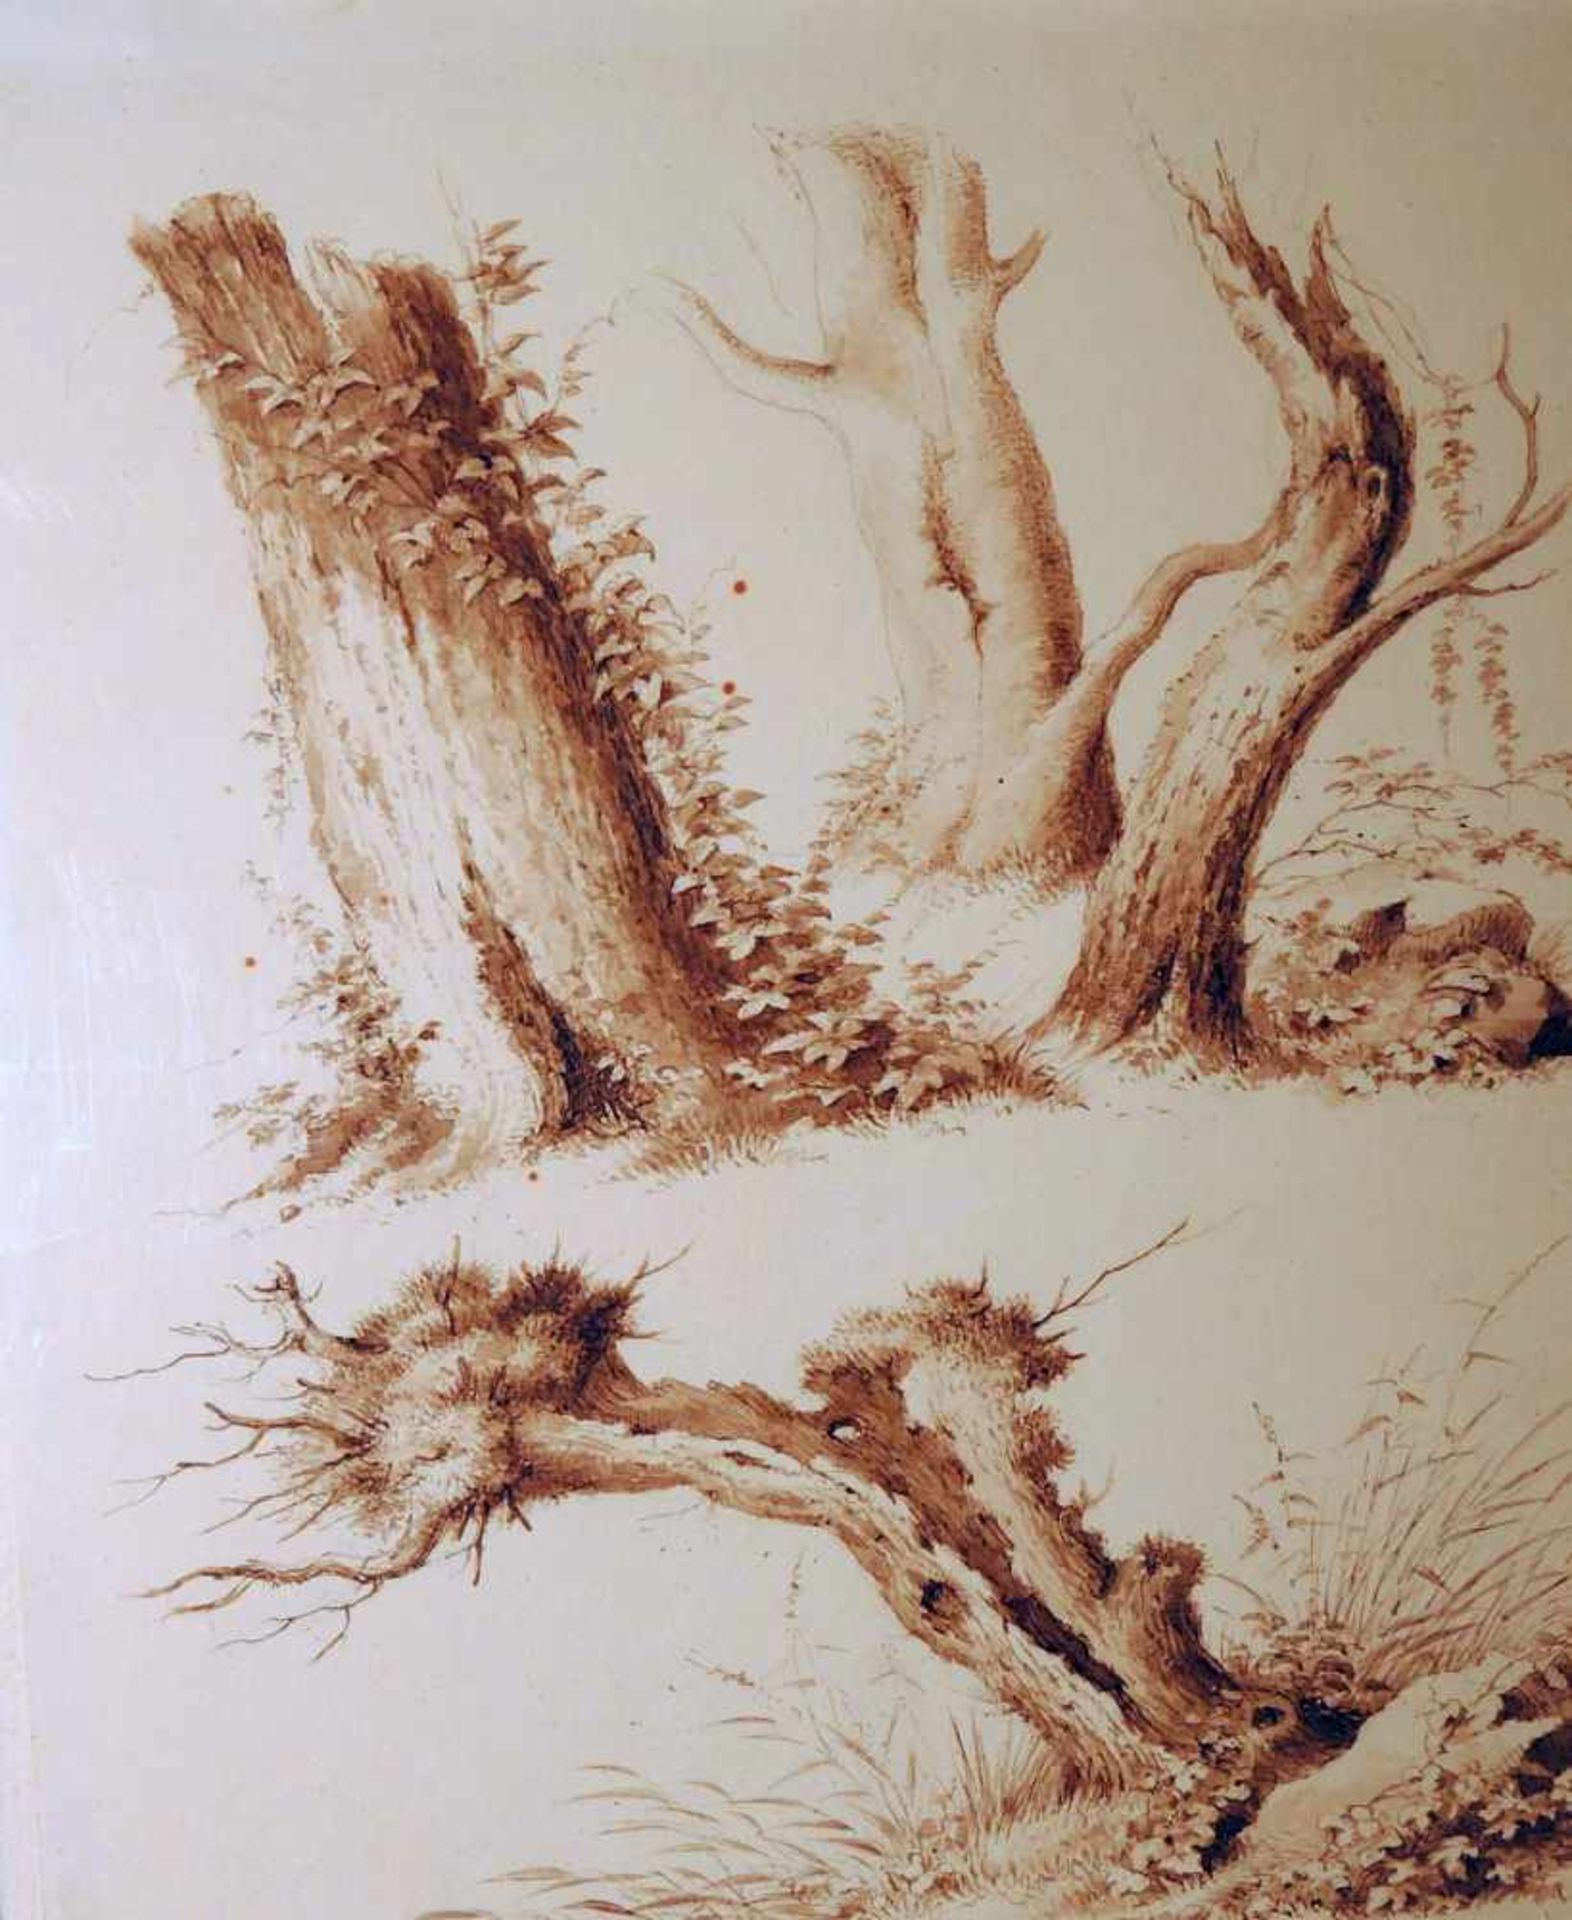 Ludwig Harzer, ca. 1810 - 1877 DresdenFast minutiös zeichnete der Landschaftsmaler, Aquarellmaler